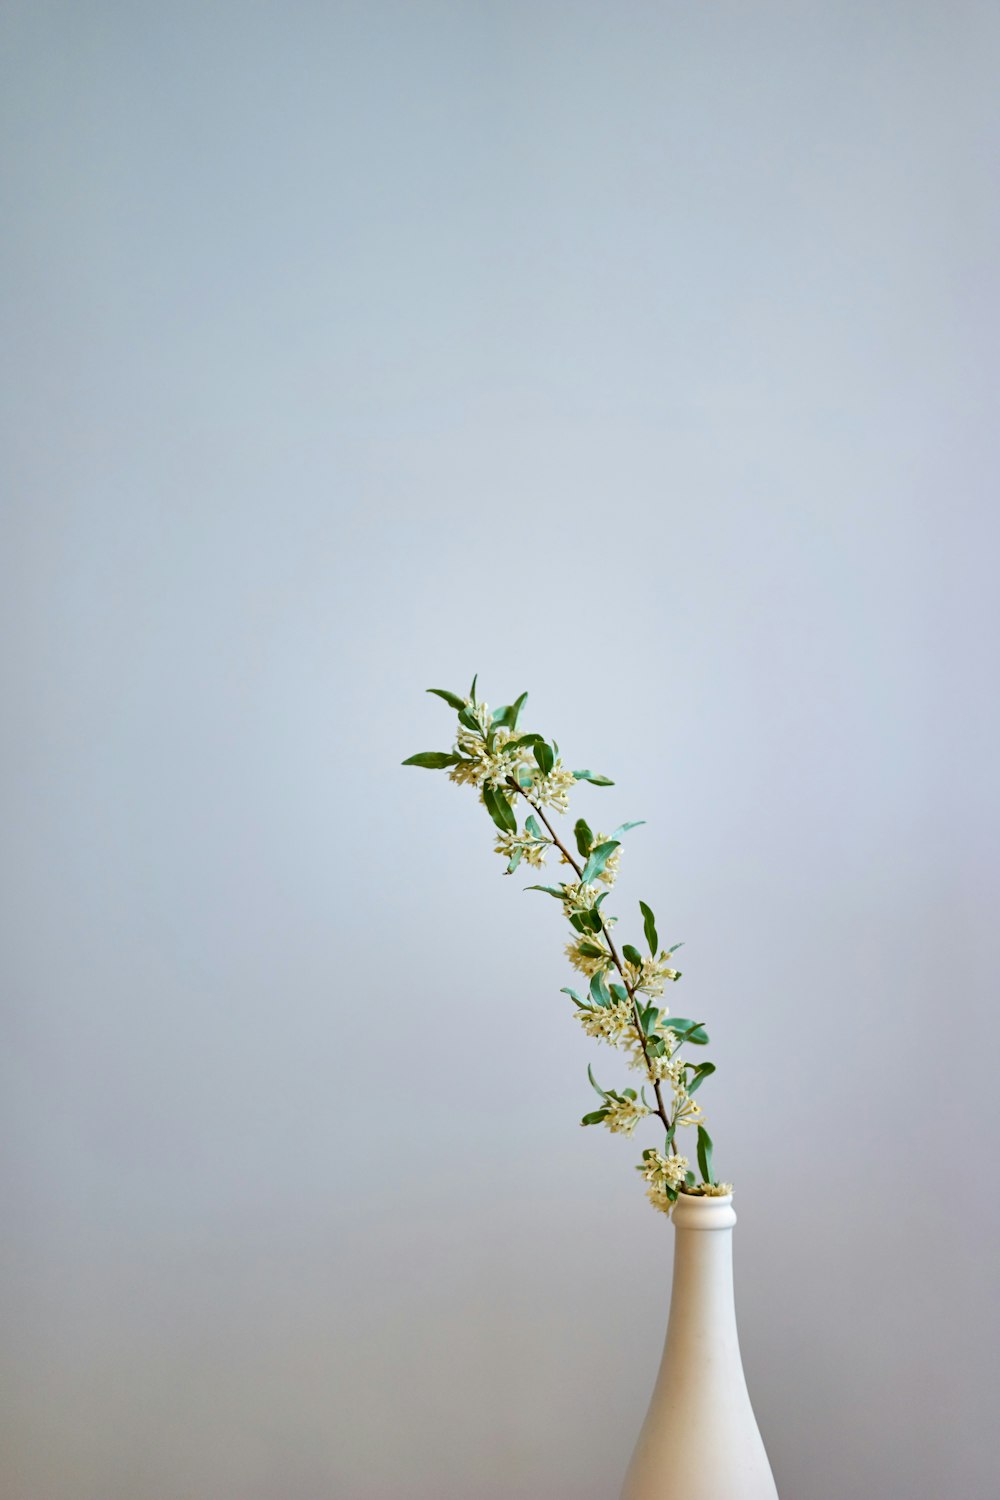 gelbe und grün blättrige Blume in weißer Vase